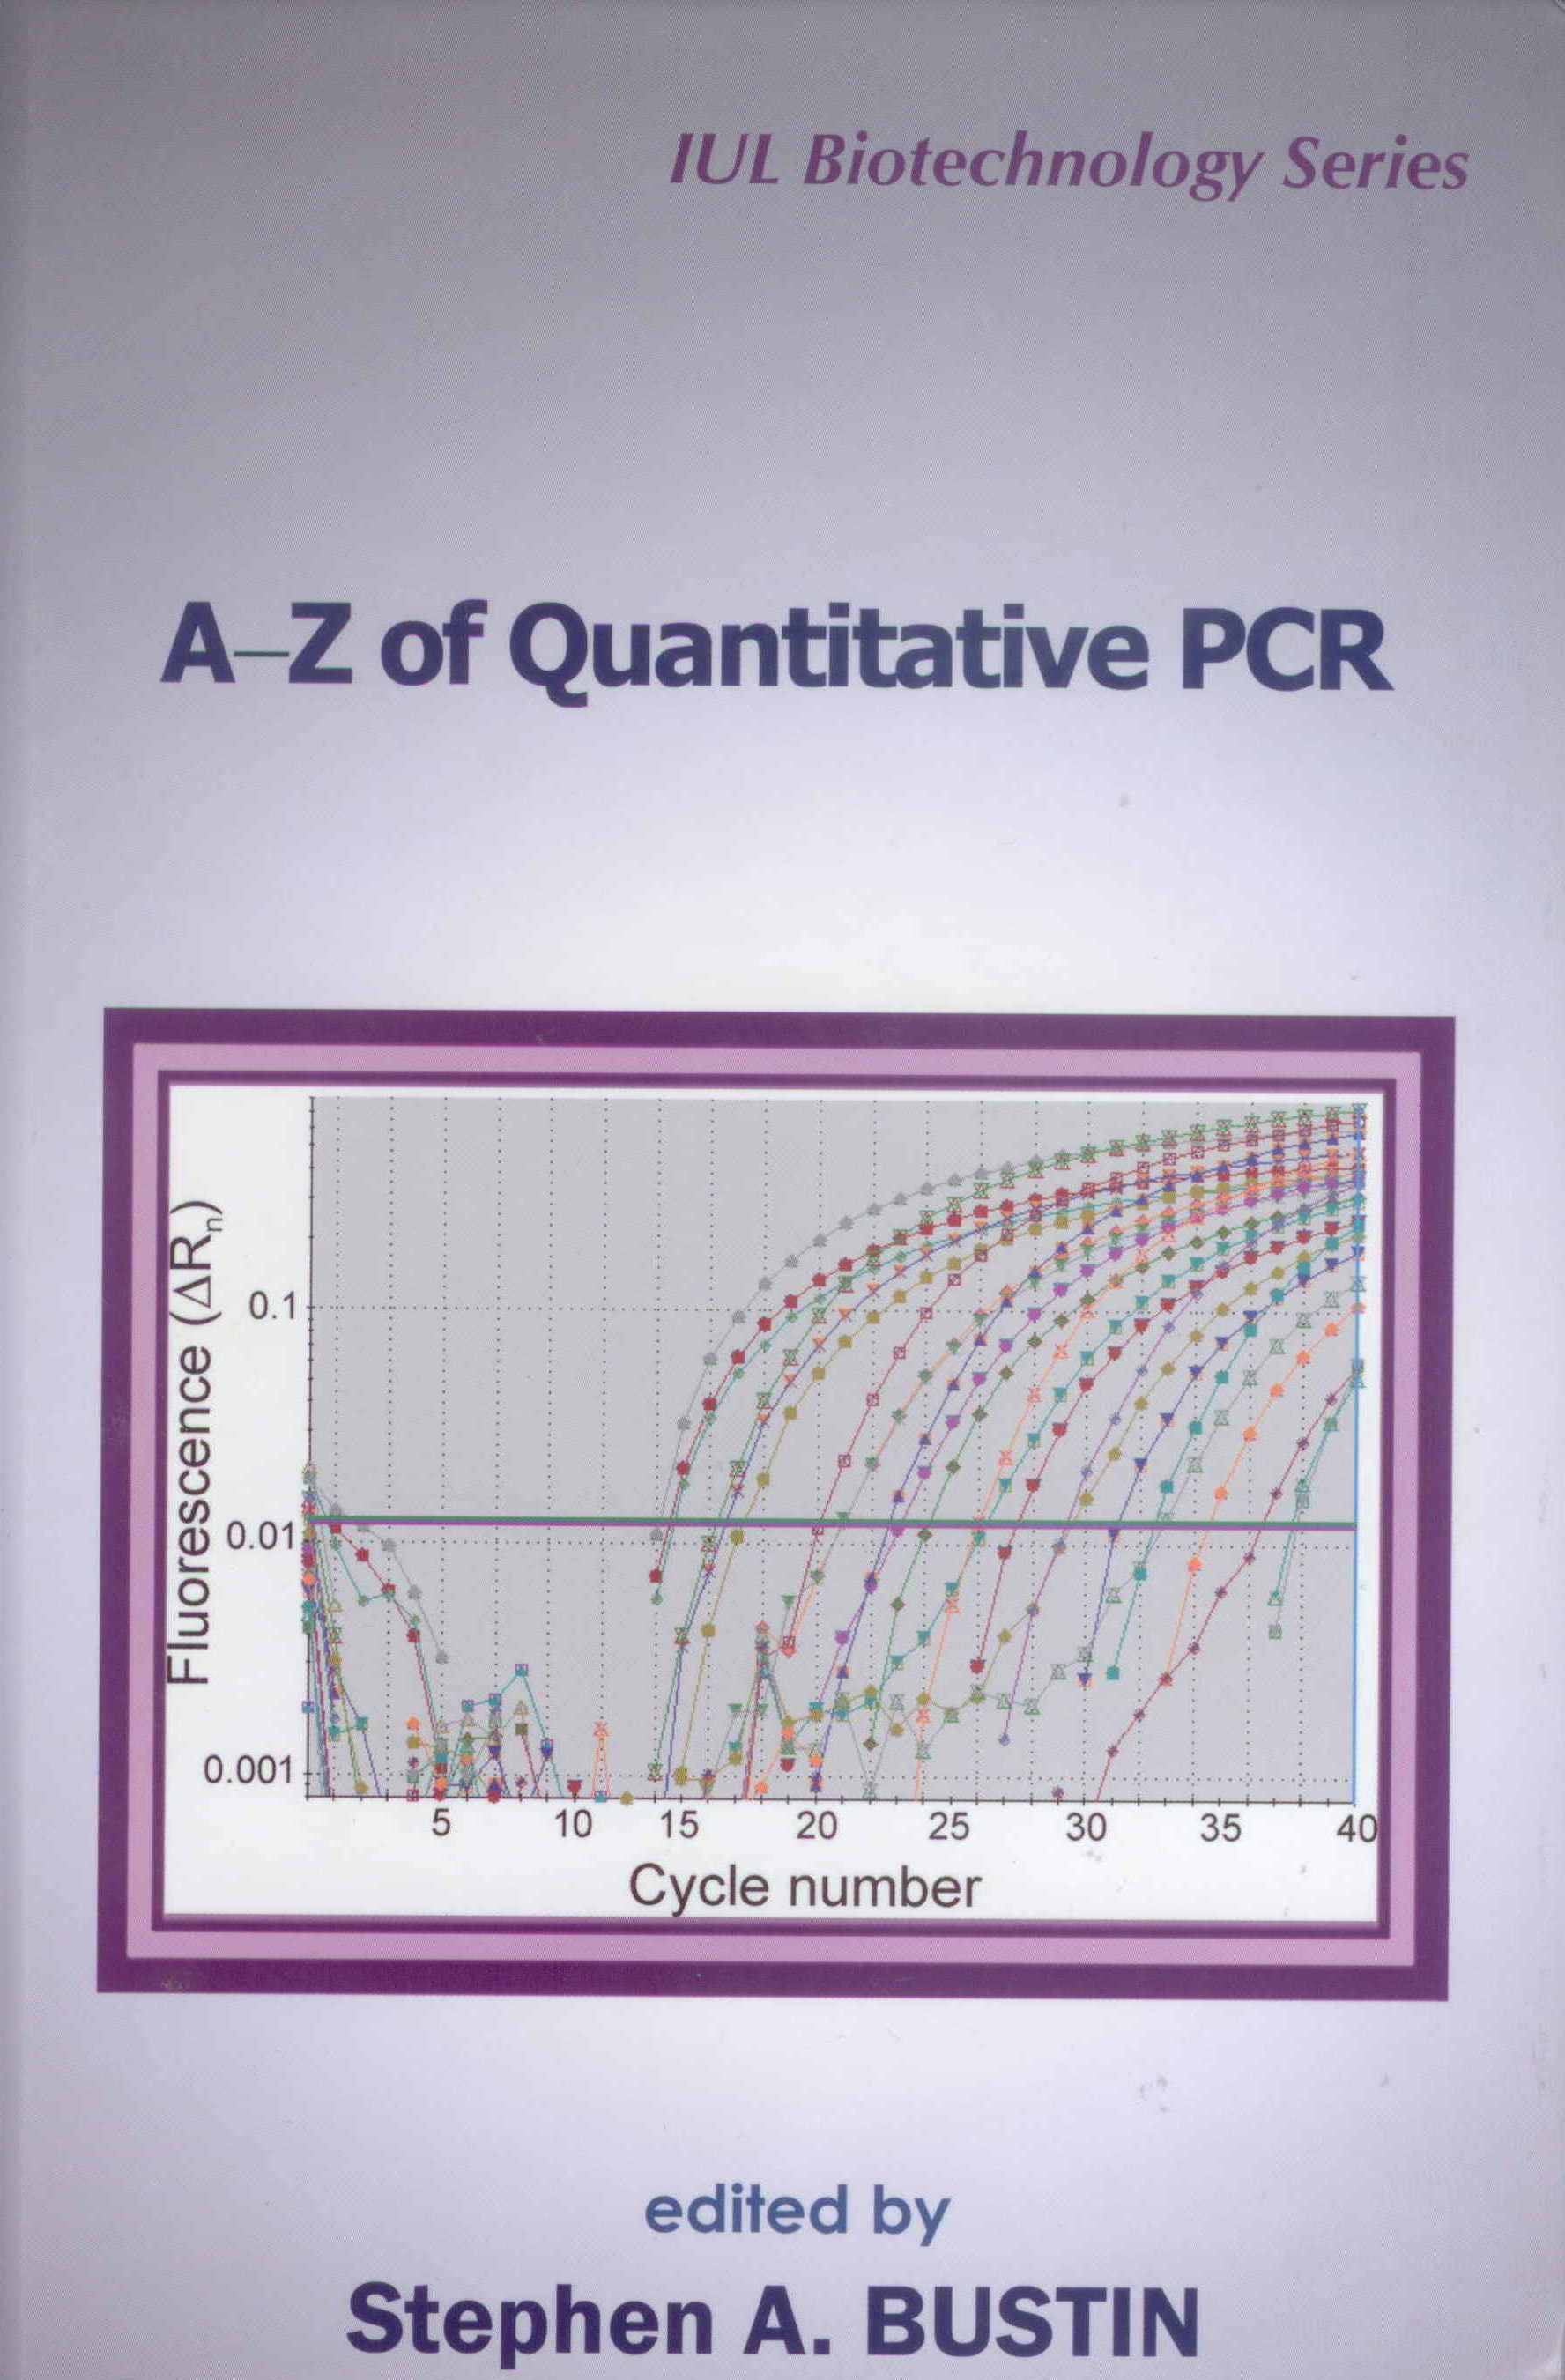 http://www.cenicana.org/investigacion/seica/imagenes_libros/2012/caratula_A-Z_quantitative_PCR.jpg